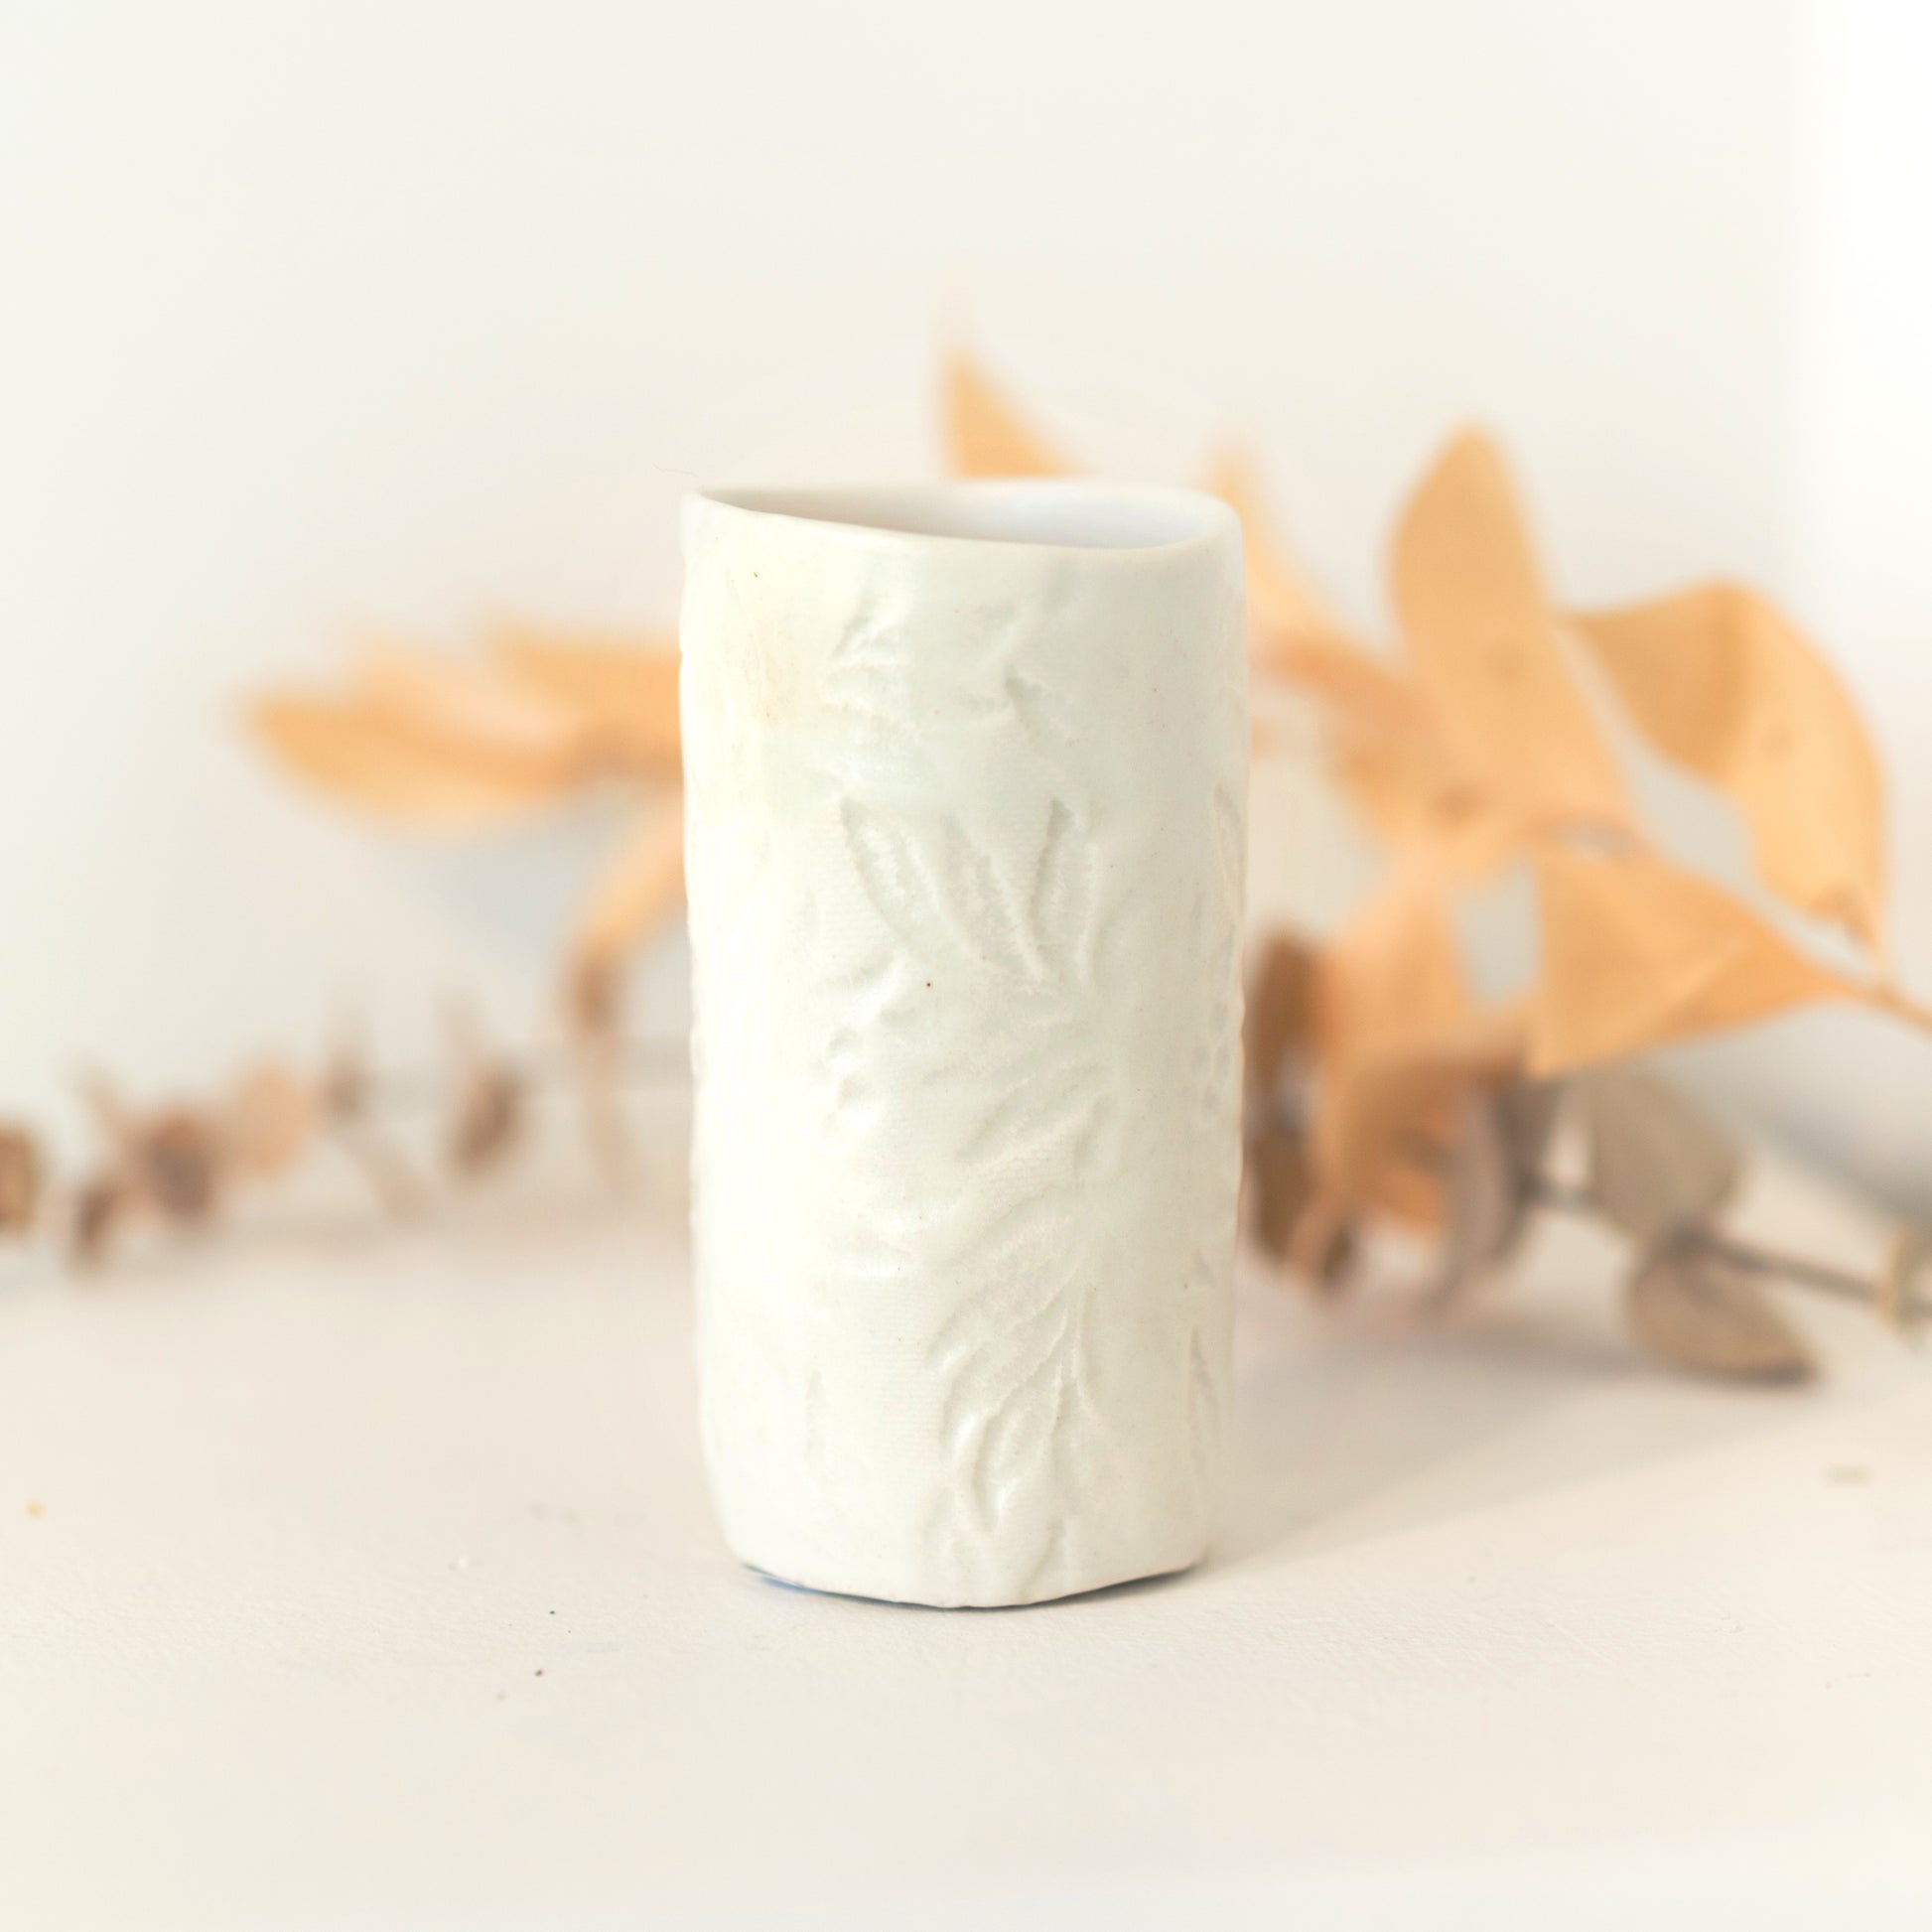 White vase with subtle imprinted floral patterning.